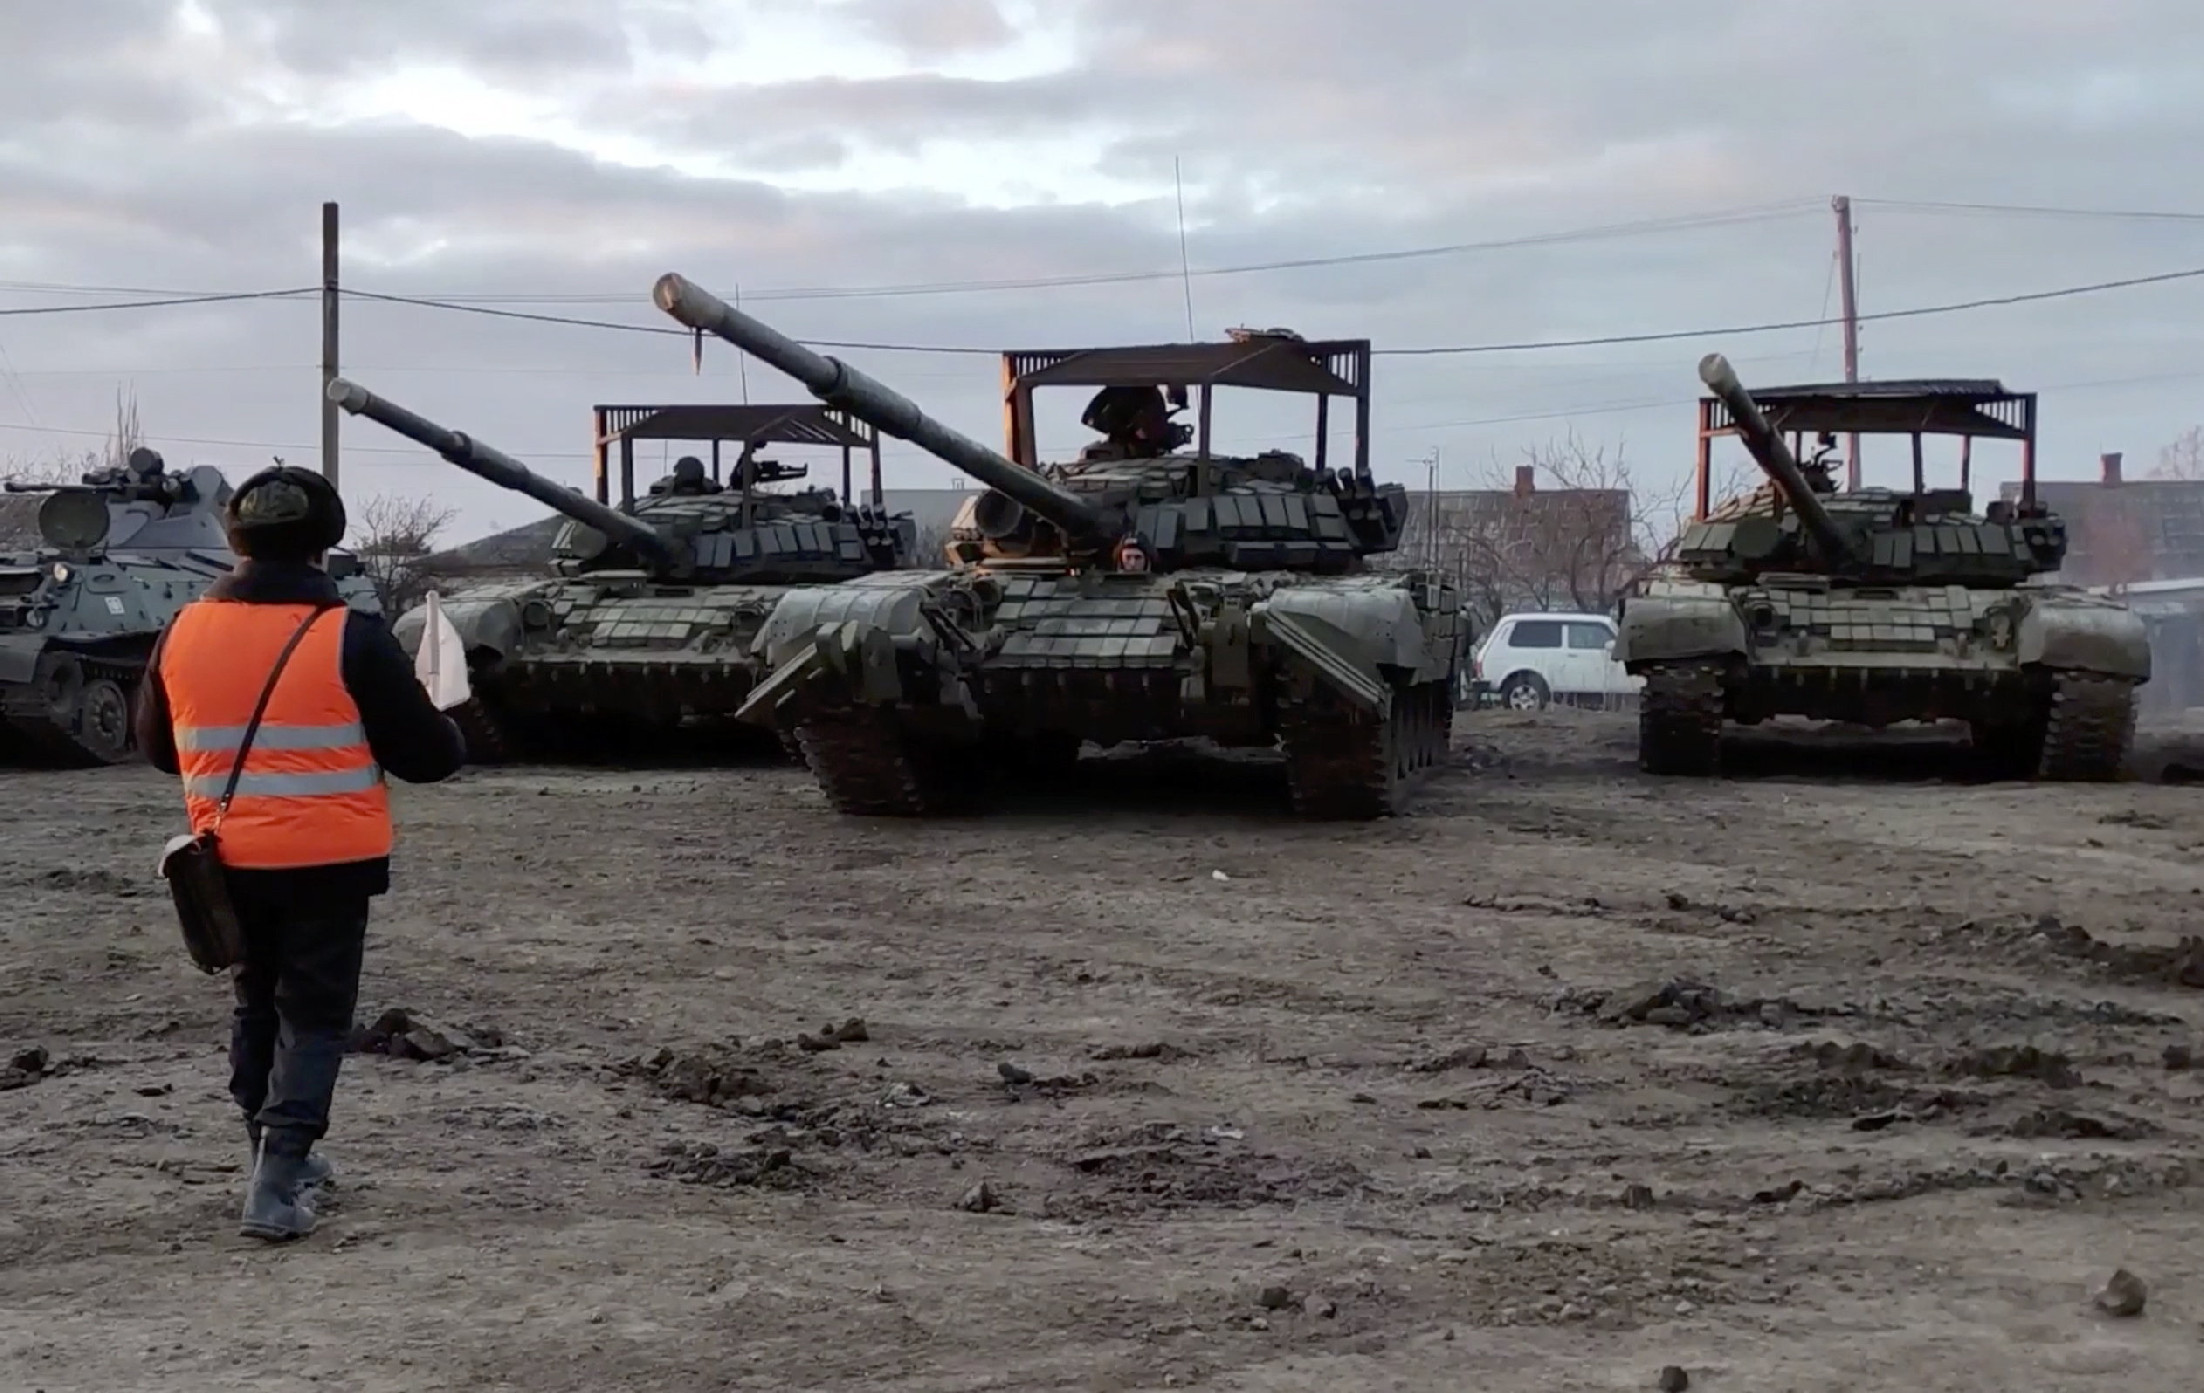 Orosz-ukrán háború: A NATO szerinit nem is vonulnak ki az orosz csapatok, csak össze-vissza mozognak